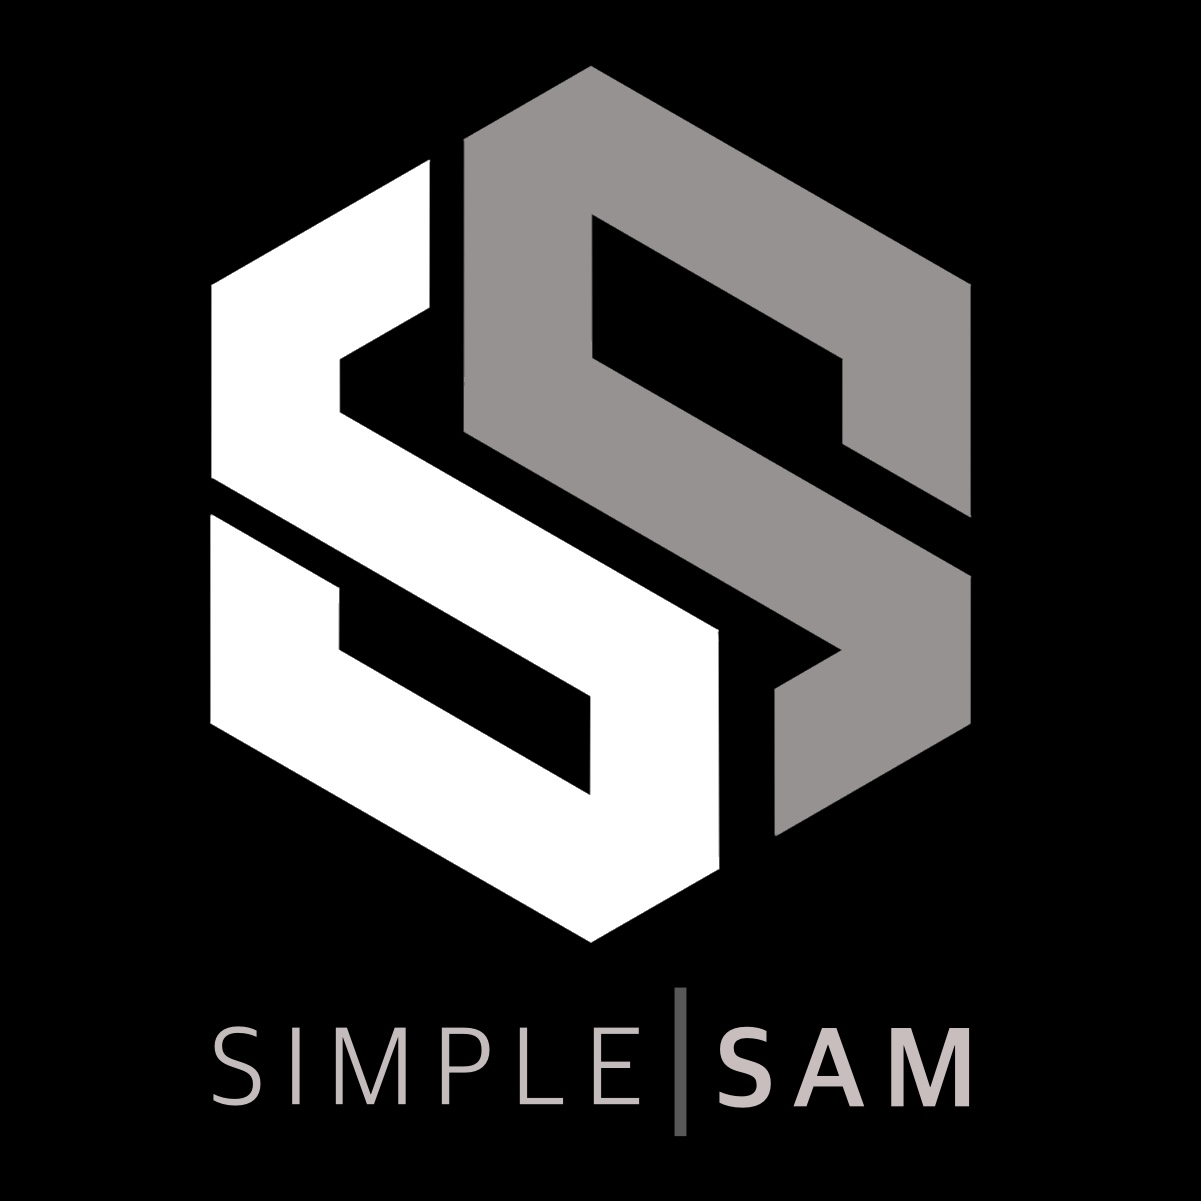 Simple Sam – Sri Lanka